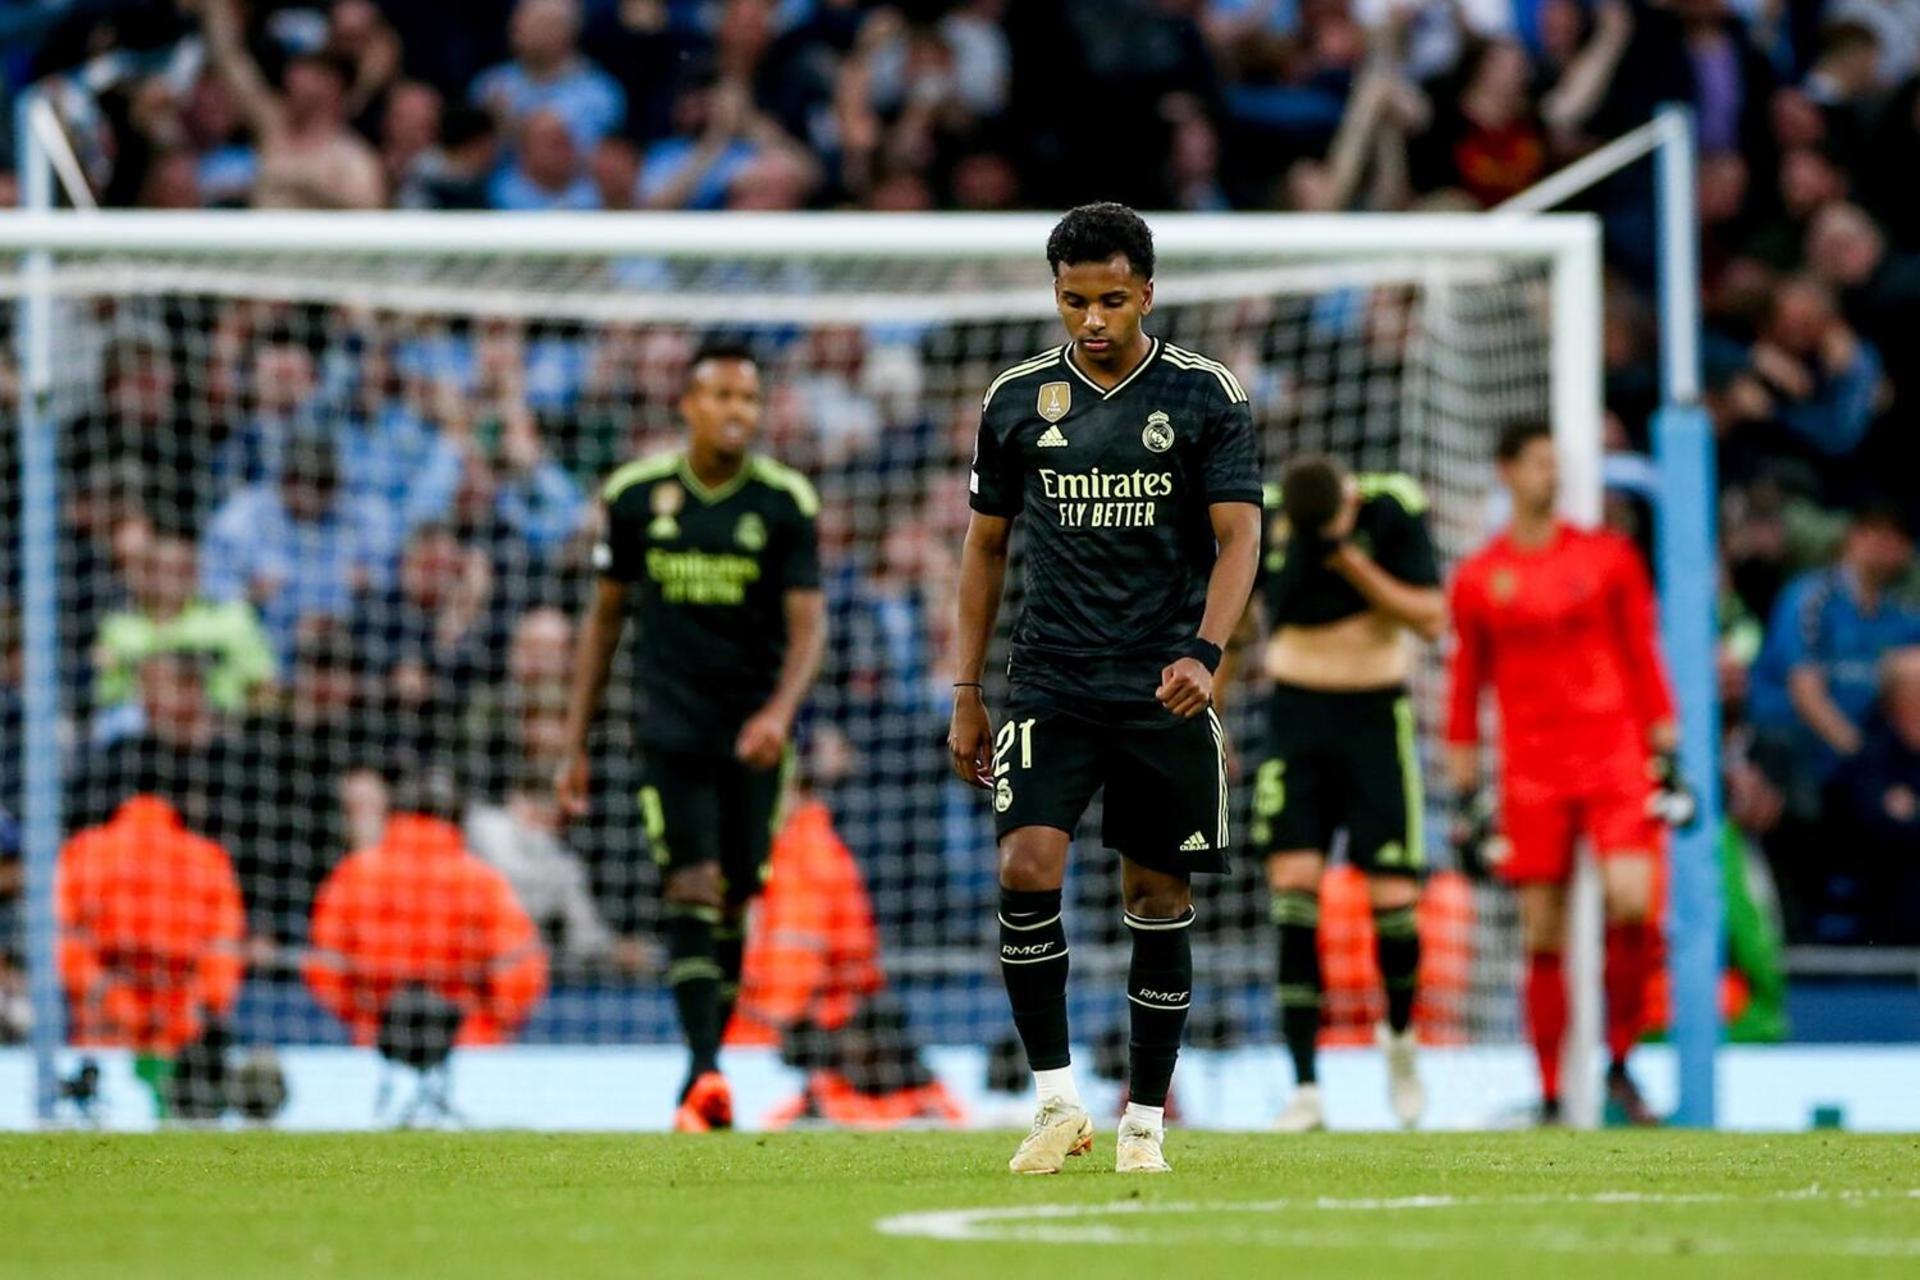 Em casa, Real Madrid empata com Manchester City e deixa decisão para jogo  de volta na Champions - Fotos - R7 Champions League